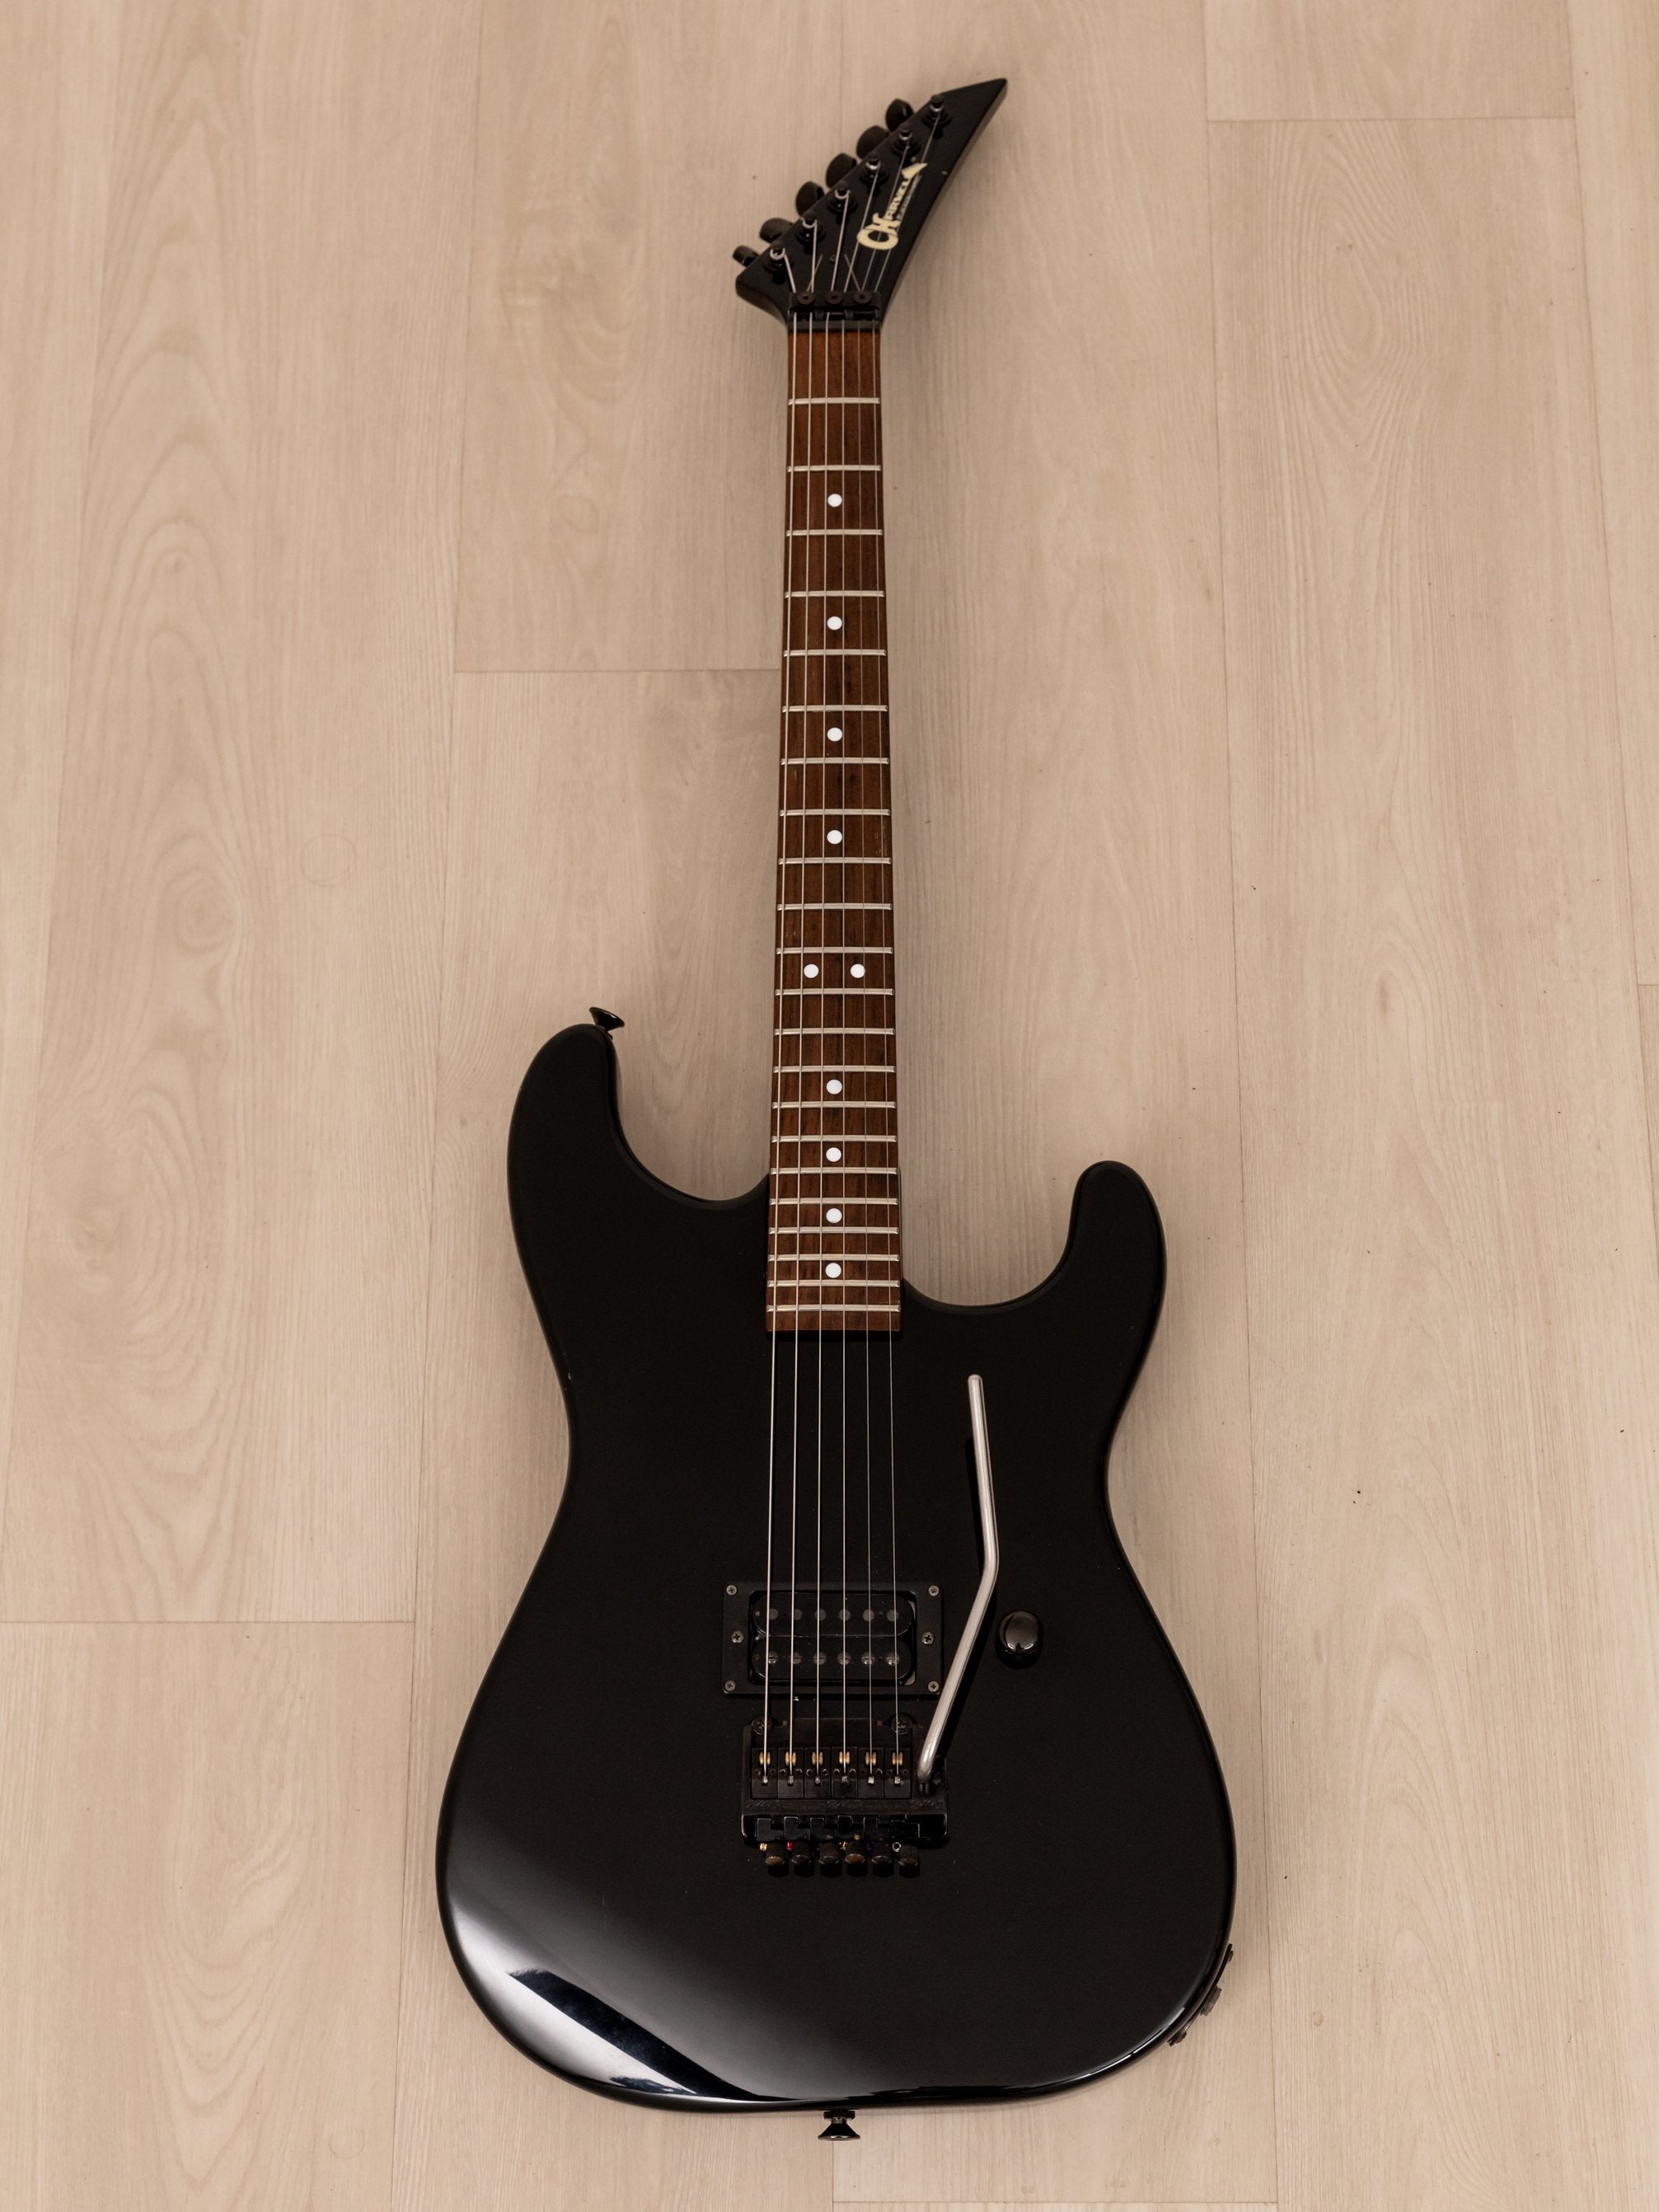 1986 Charvel by Jackson Model 2 Super Strat Vintage Electric Guitar Black w/ Kahler, Japan